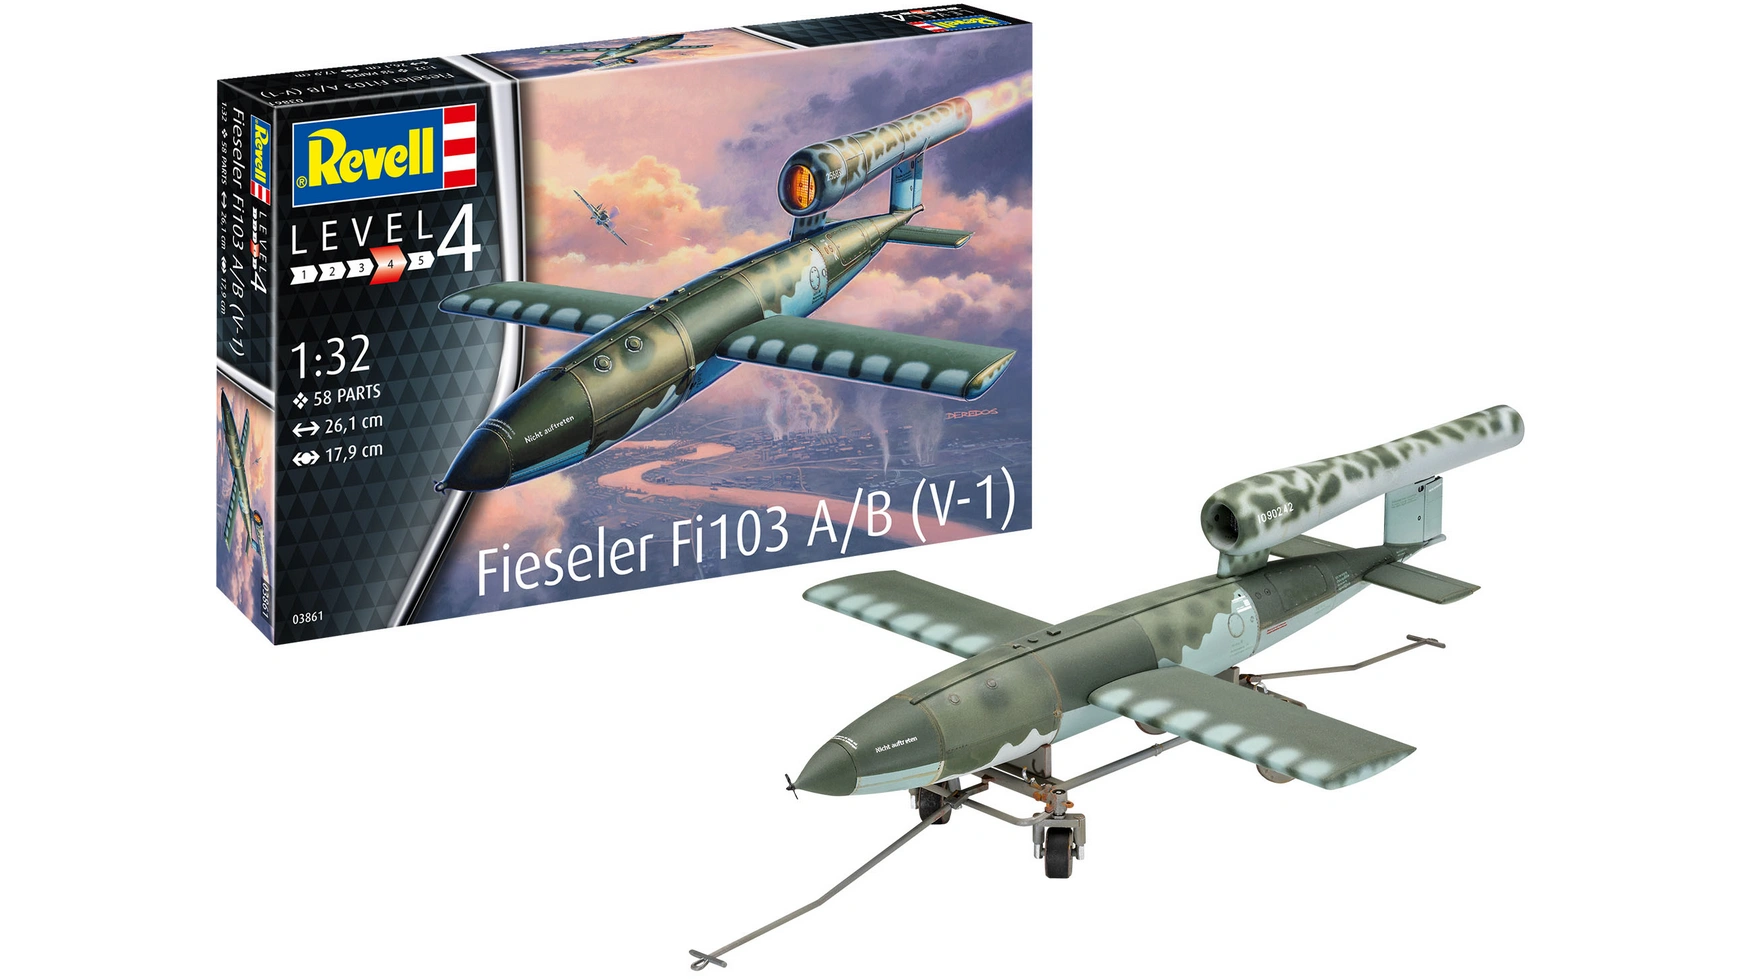 Revell Fieseler Fi103 A/B V-1m, 1:32 сборные модели revell крылатая ракета fieseler fi103 v 1